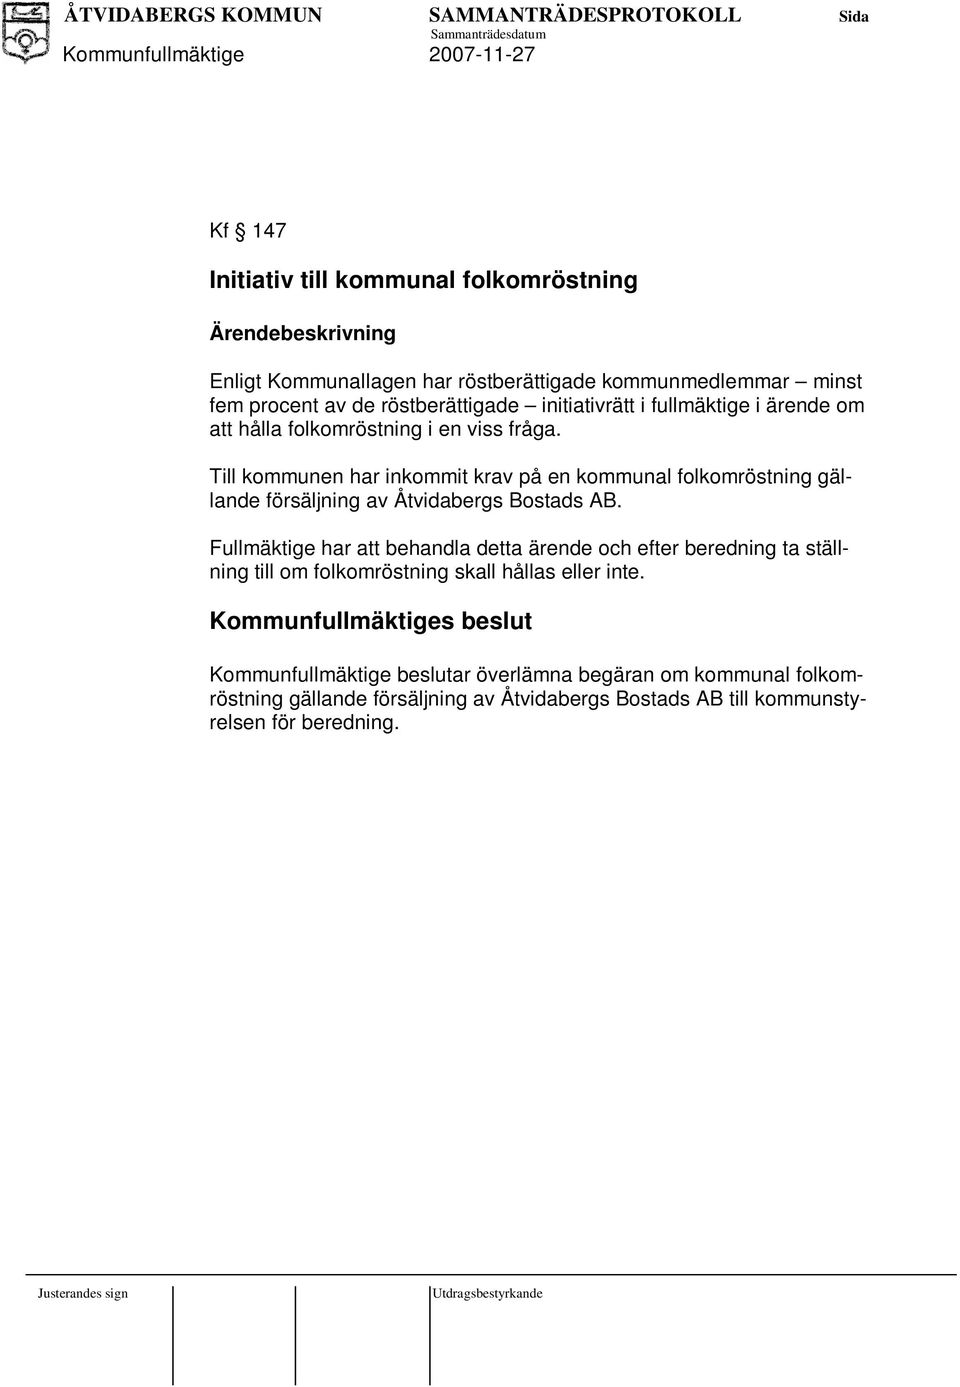 Till kommunen har inkommit krav på en kommunal folkomröstning gällande försäljning av Åtvidabergs Bostads AB.